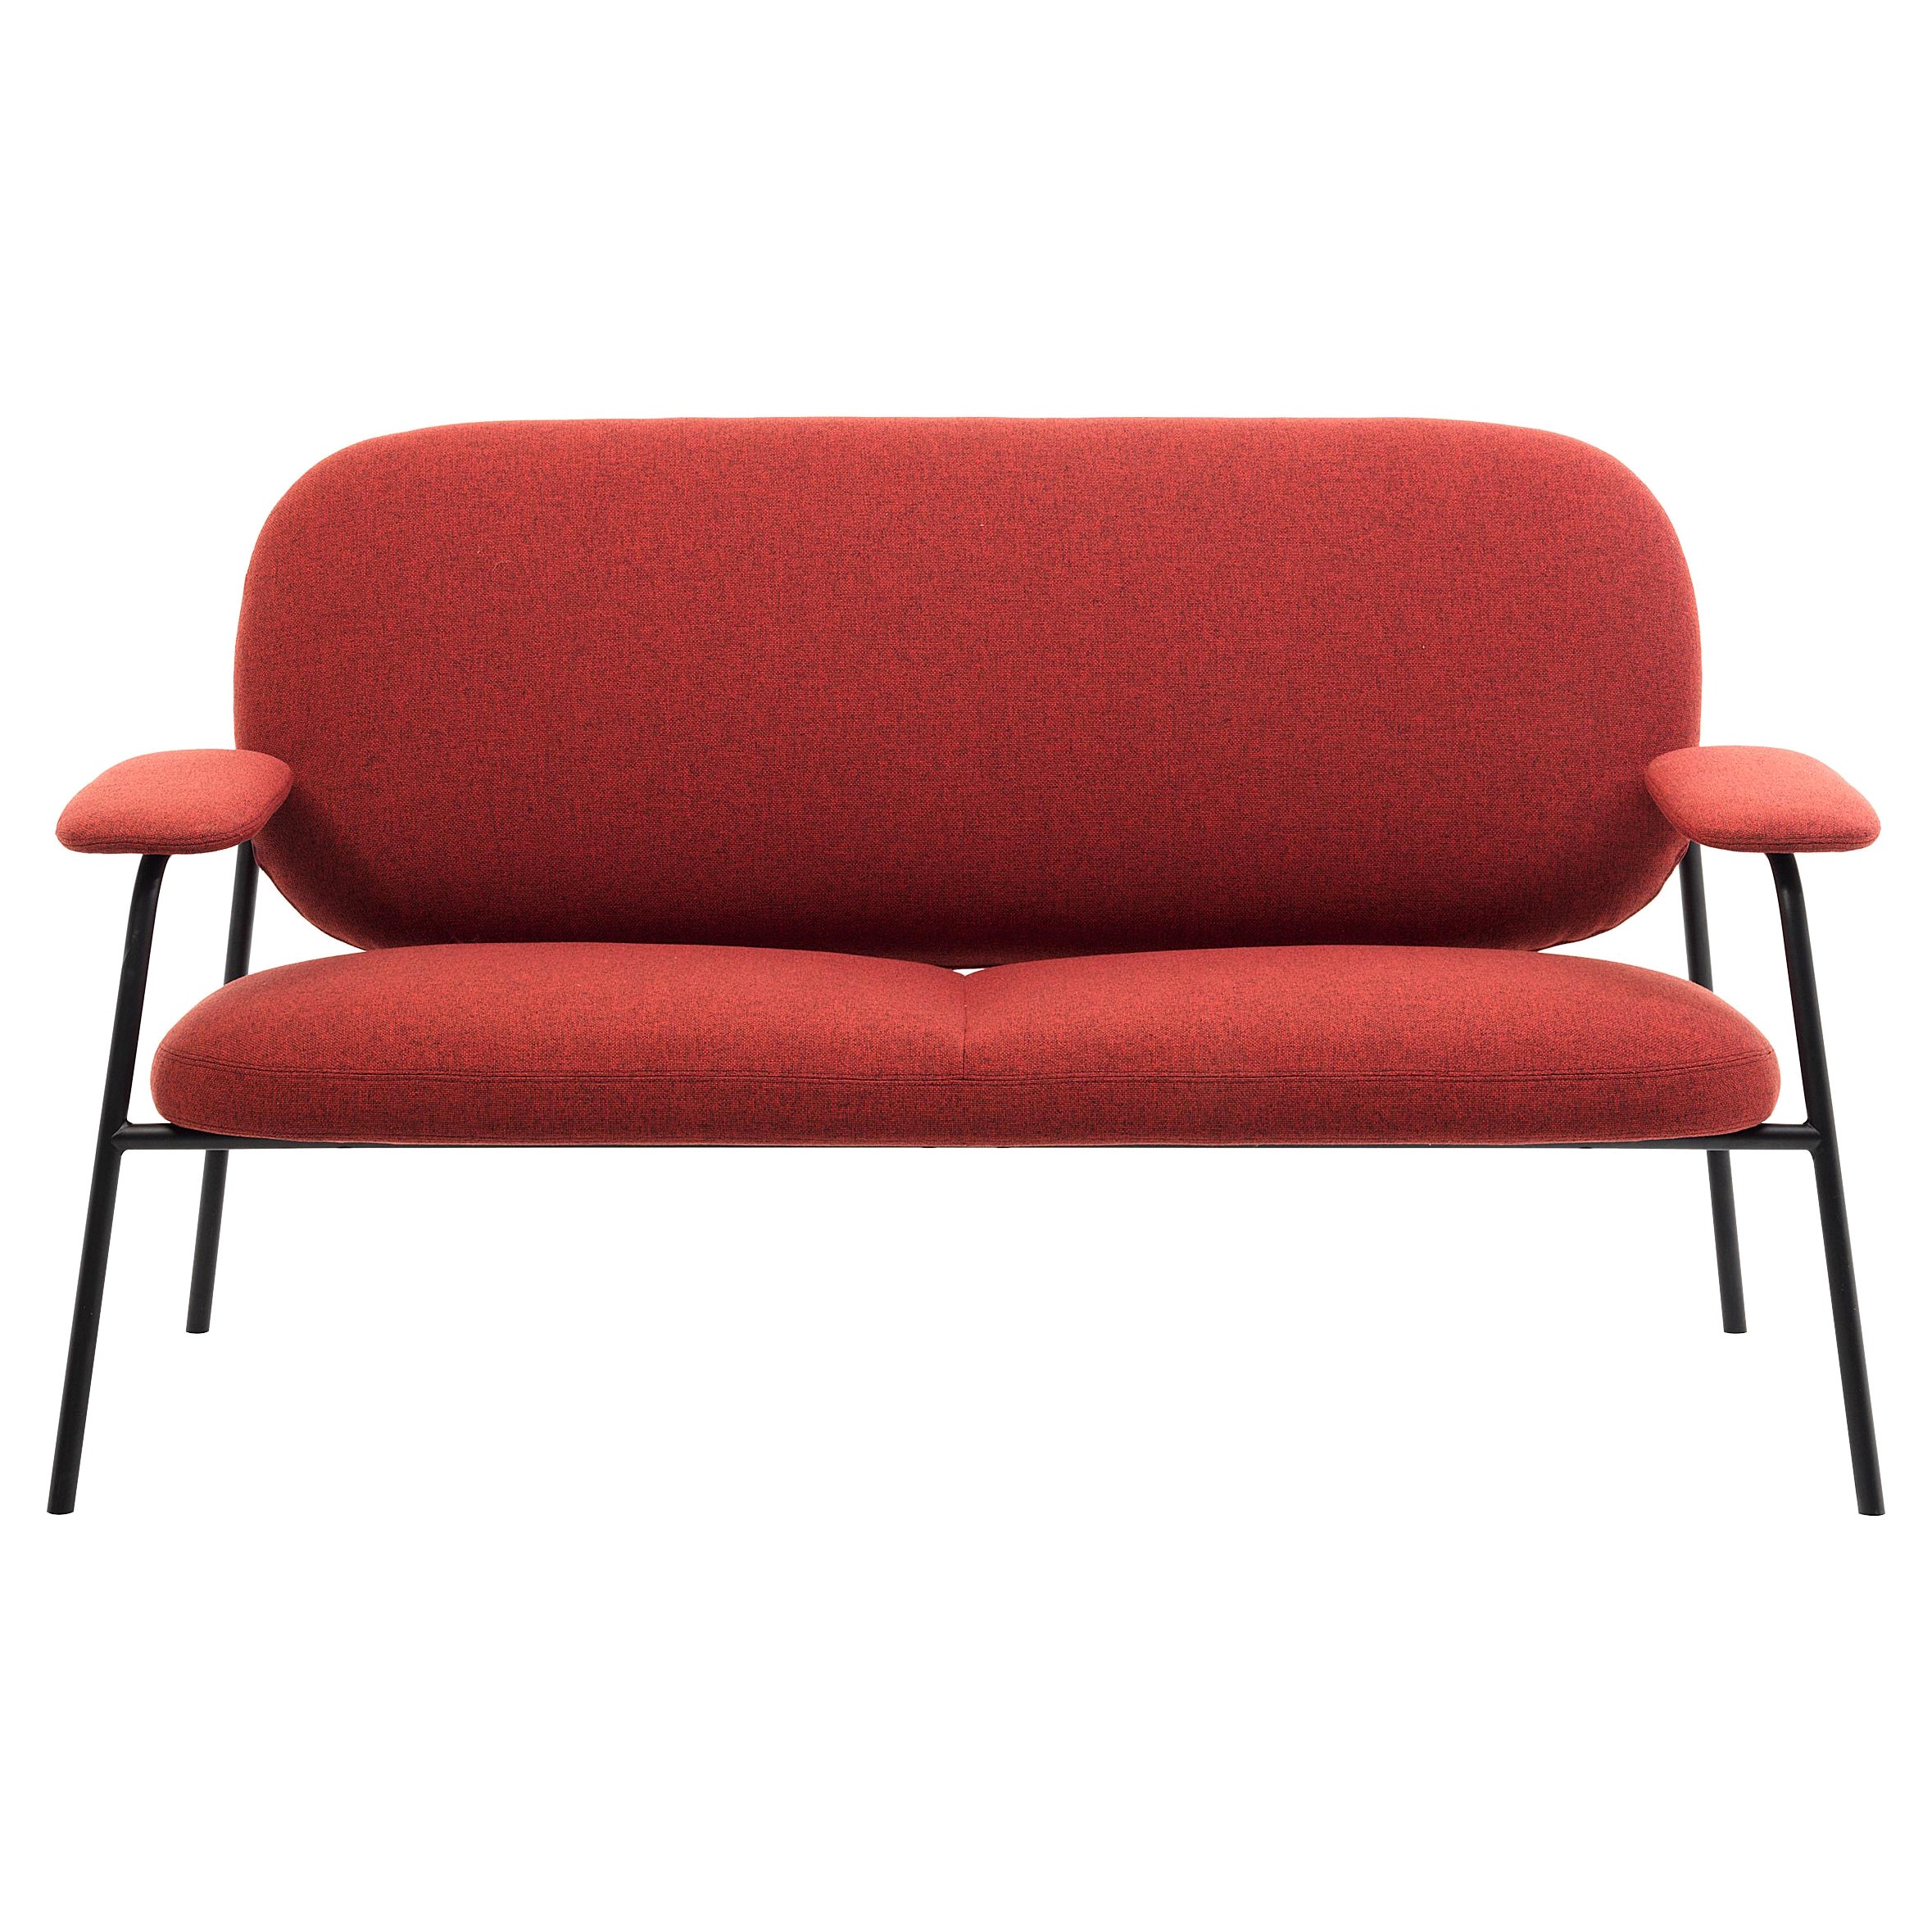 Canapé Philo Two Seater rouge avec tapisserie supplémentaire rouge et cadre noir mat de Marco Zito